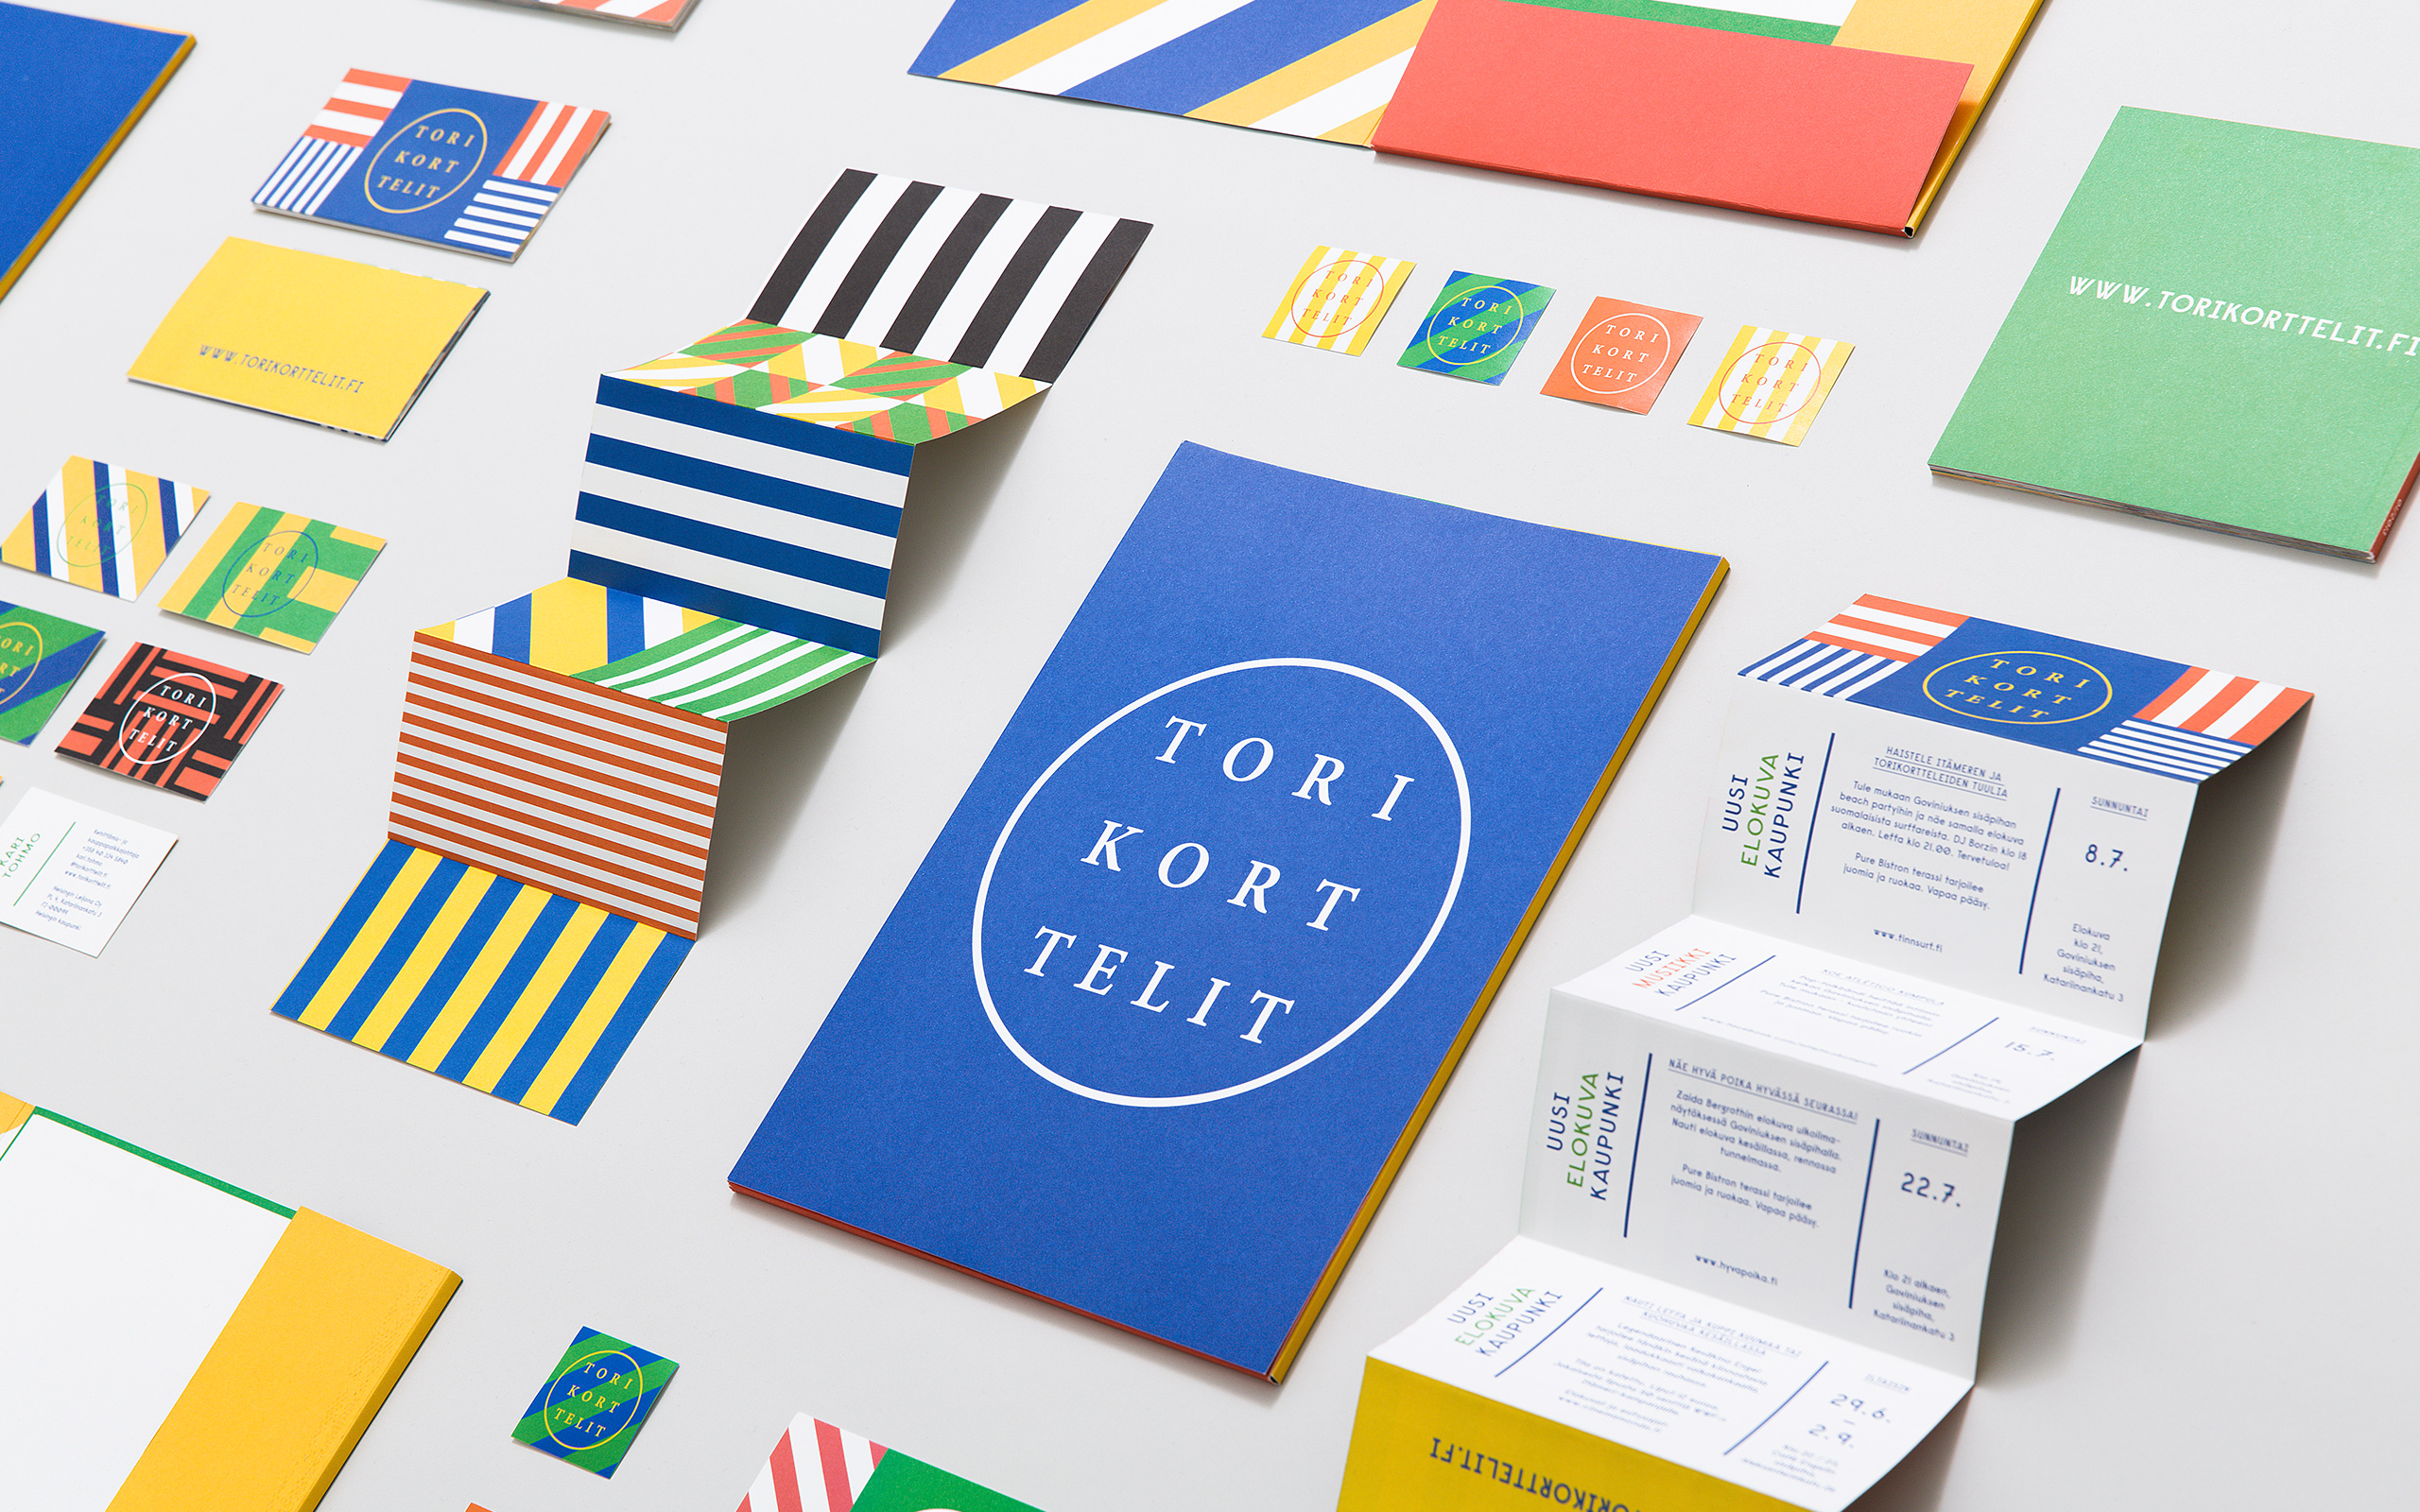 Branding and print for Finnish festival Torikorttelit designed by KokoroMoi